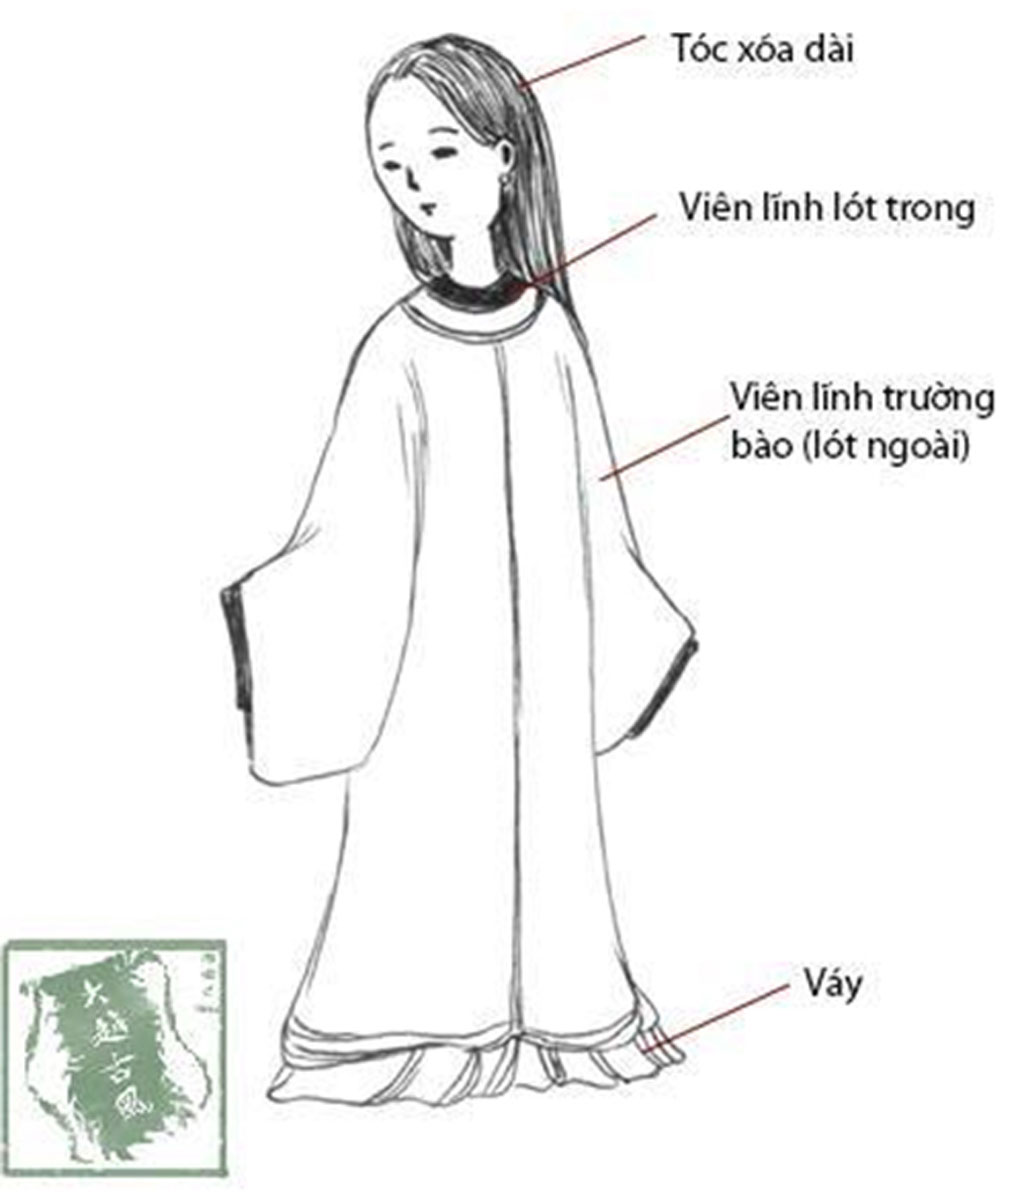 Áo dài cách tân là món quà tinh thần mà thời trang Việt Nam dành tặng cho thế giới. Với kiểu dáng độc đáo, sáng tạo và phù hợp với nhiều hoàn cảnh, áo dài cách tân đang trở thành xu hướng được ưa chuộng của giới trẻ. Quý khách hãy cùng khám phá và lựa chọn cho mình một bộ áo dài ưng ý nhất.